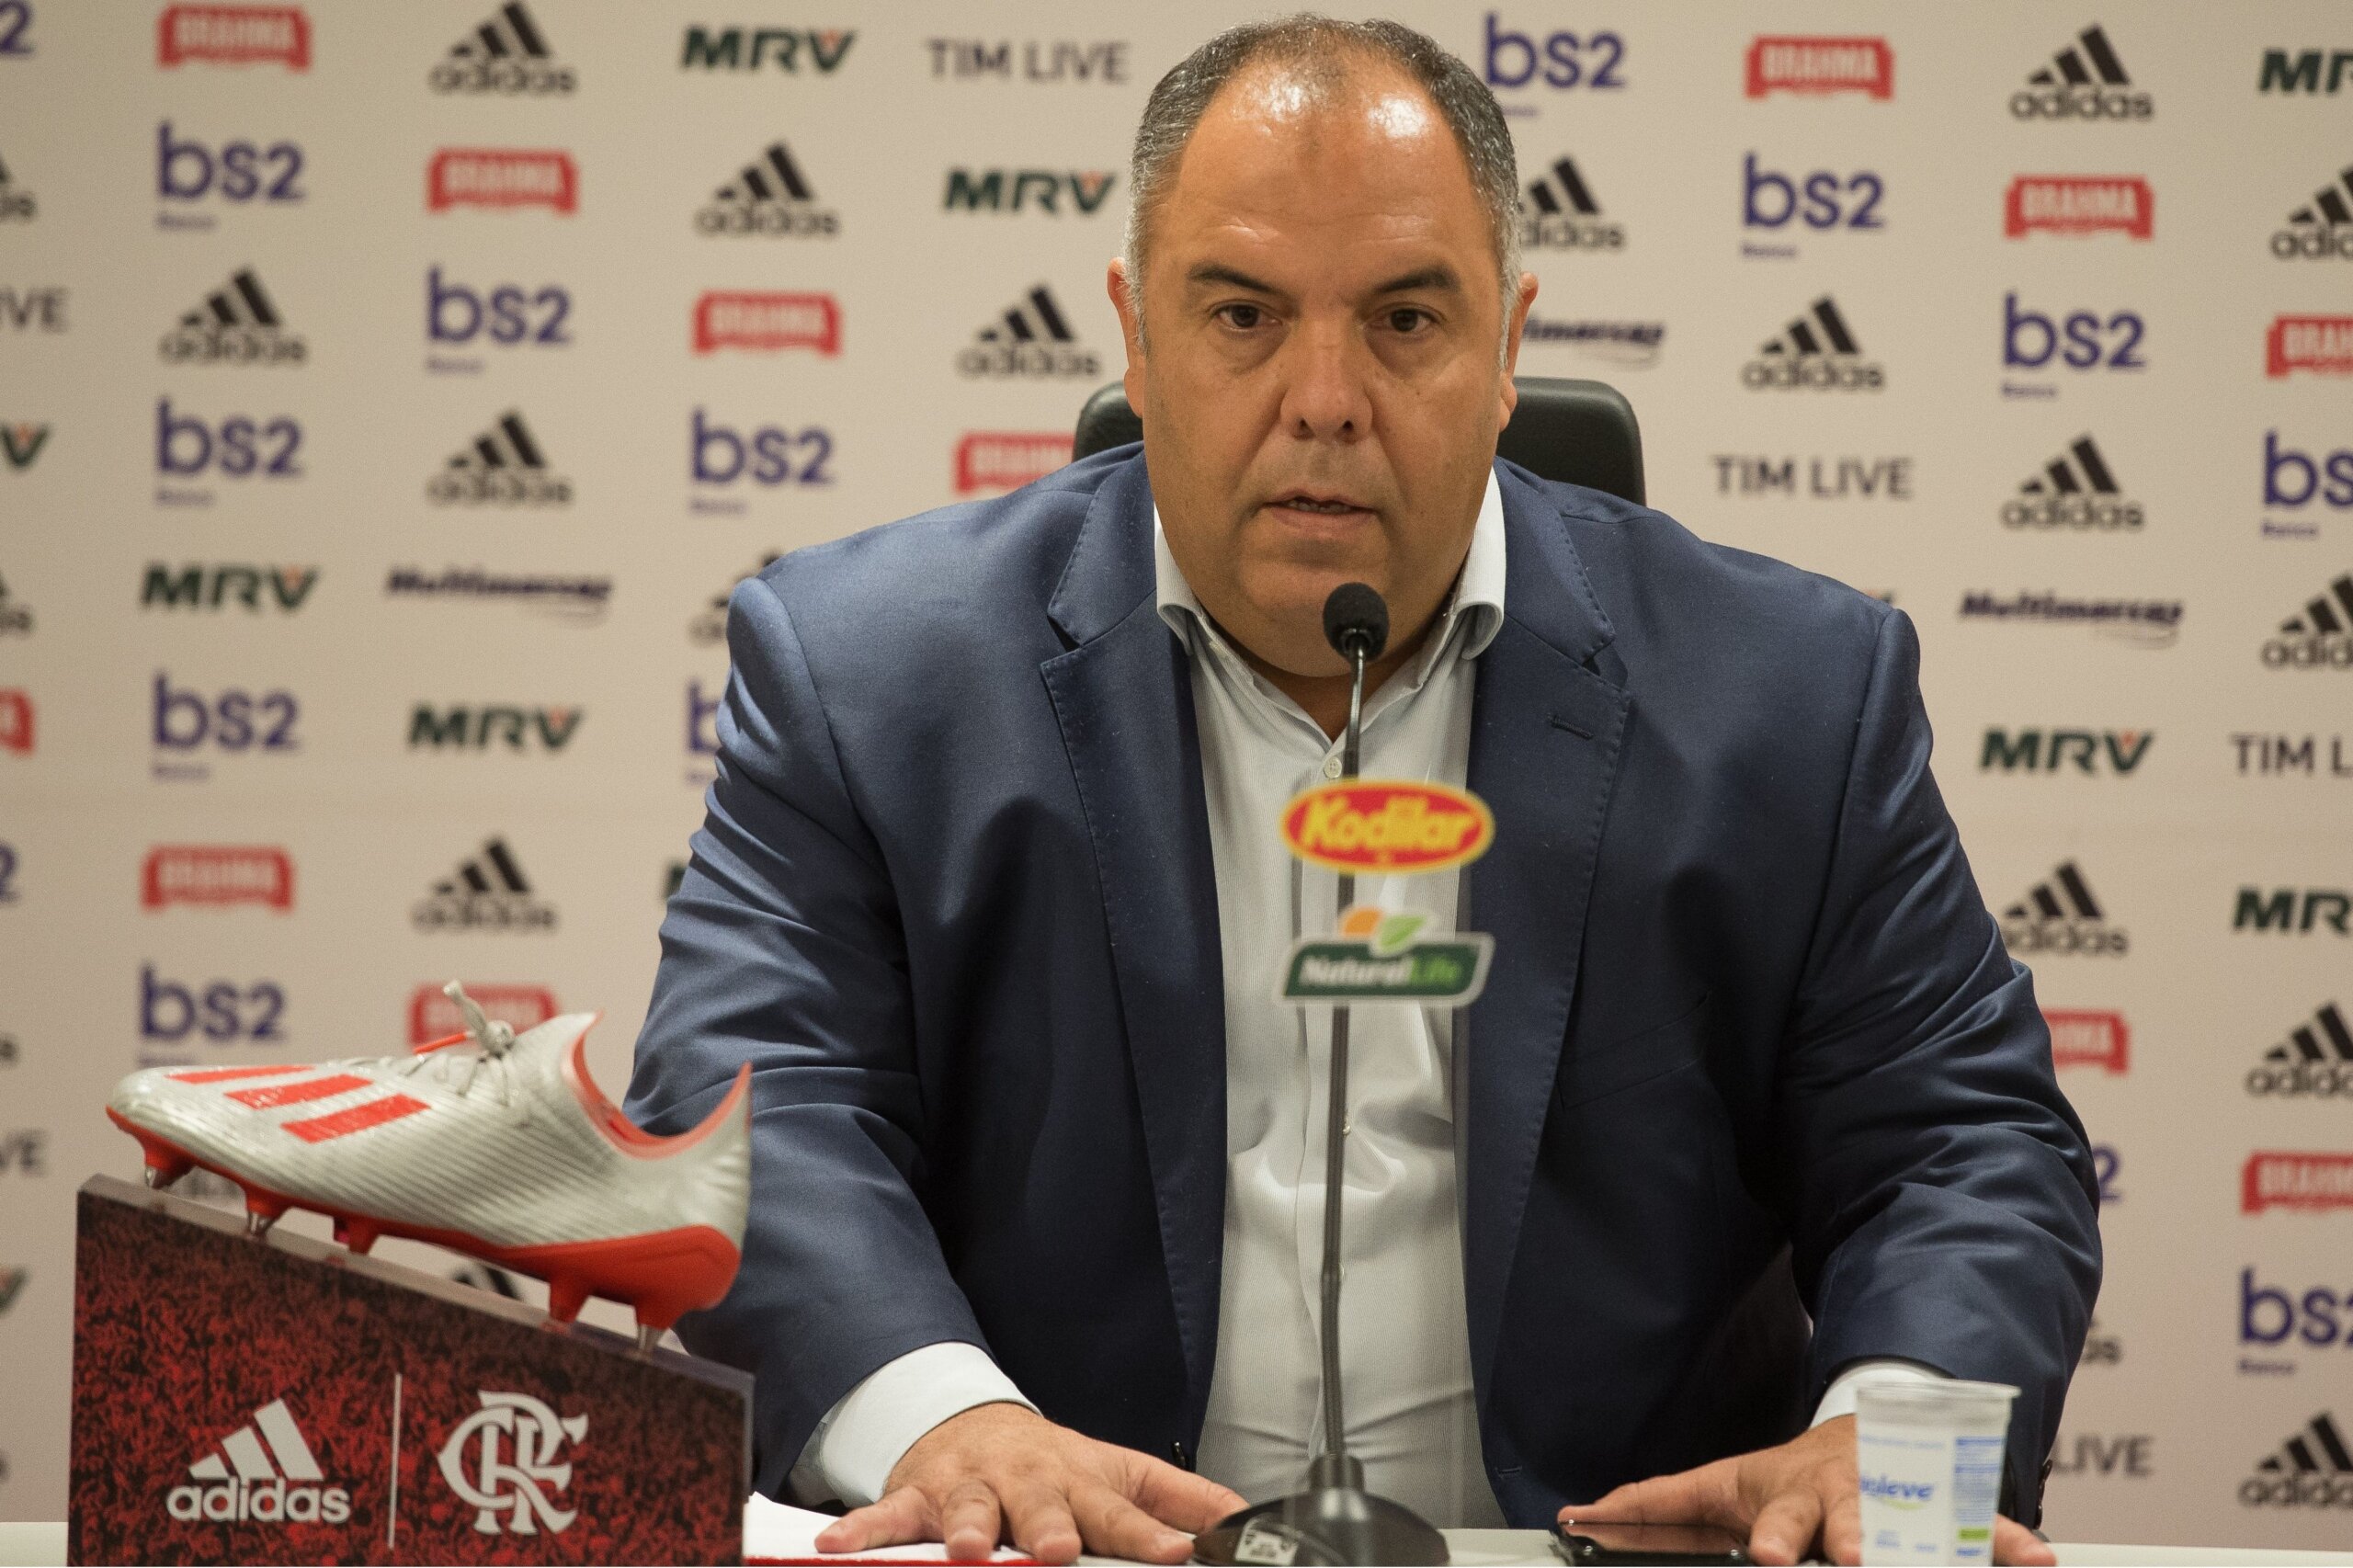 Braz confirma interesse do Flamengo em Walace e Wendel e proposta de clube turco por Arão